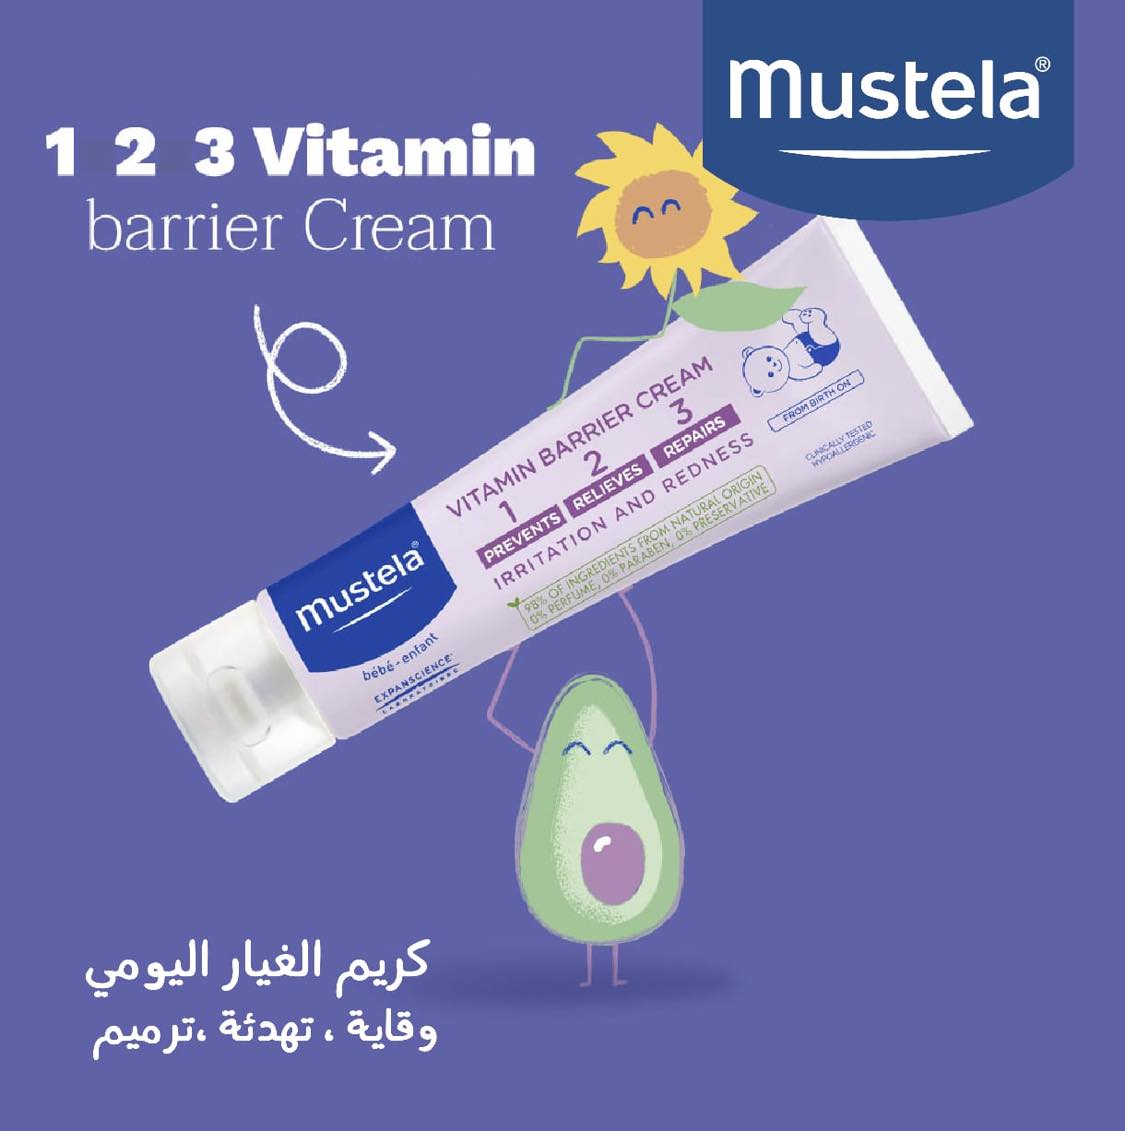 Mustela Diaper Rash Cream 100ml - BambiniJO | Buy Online | Jordan